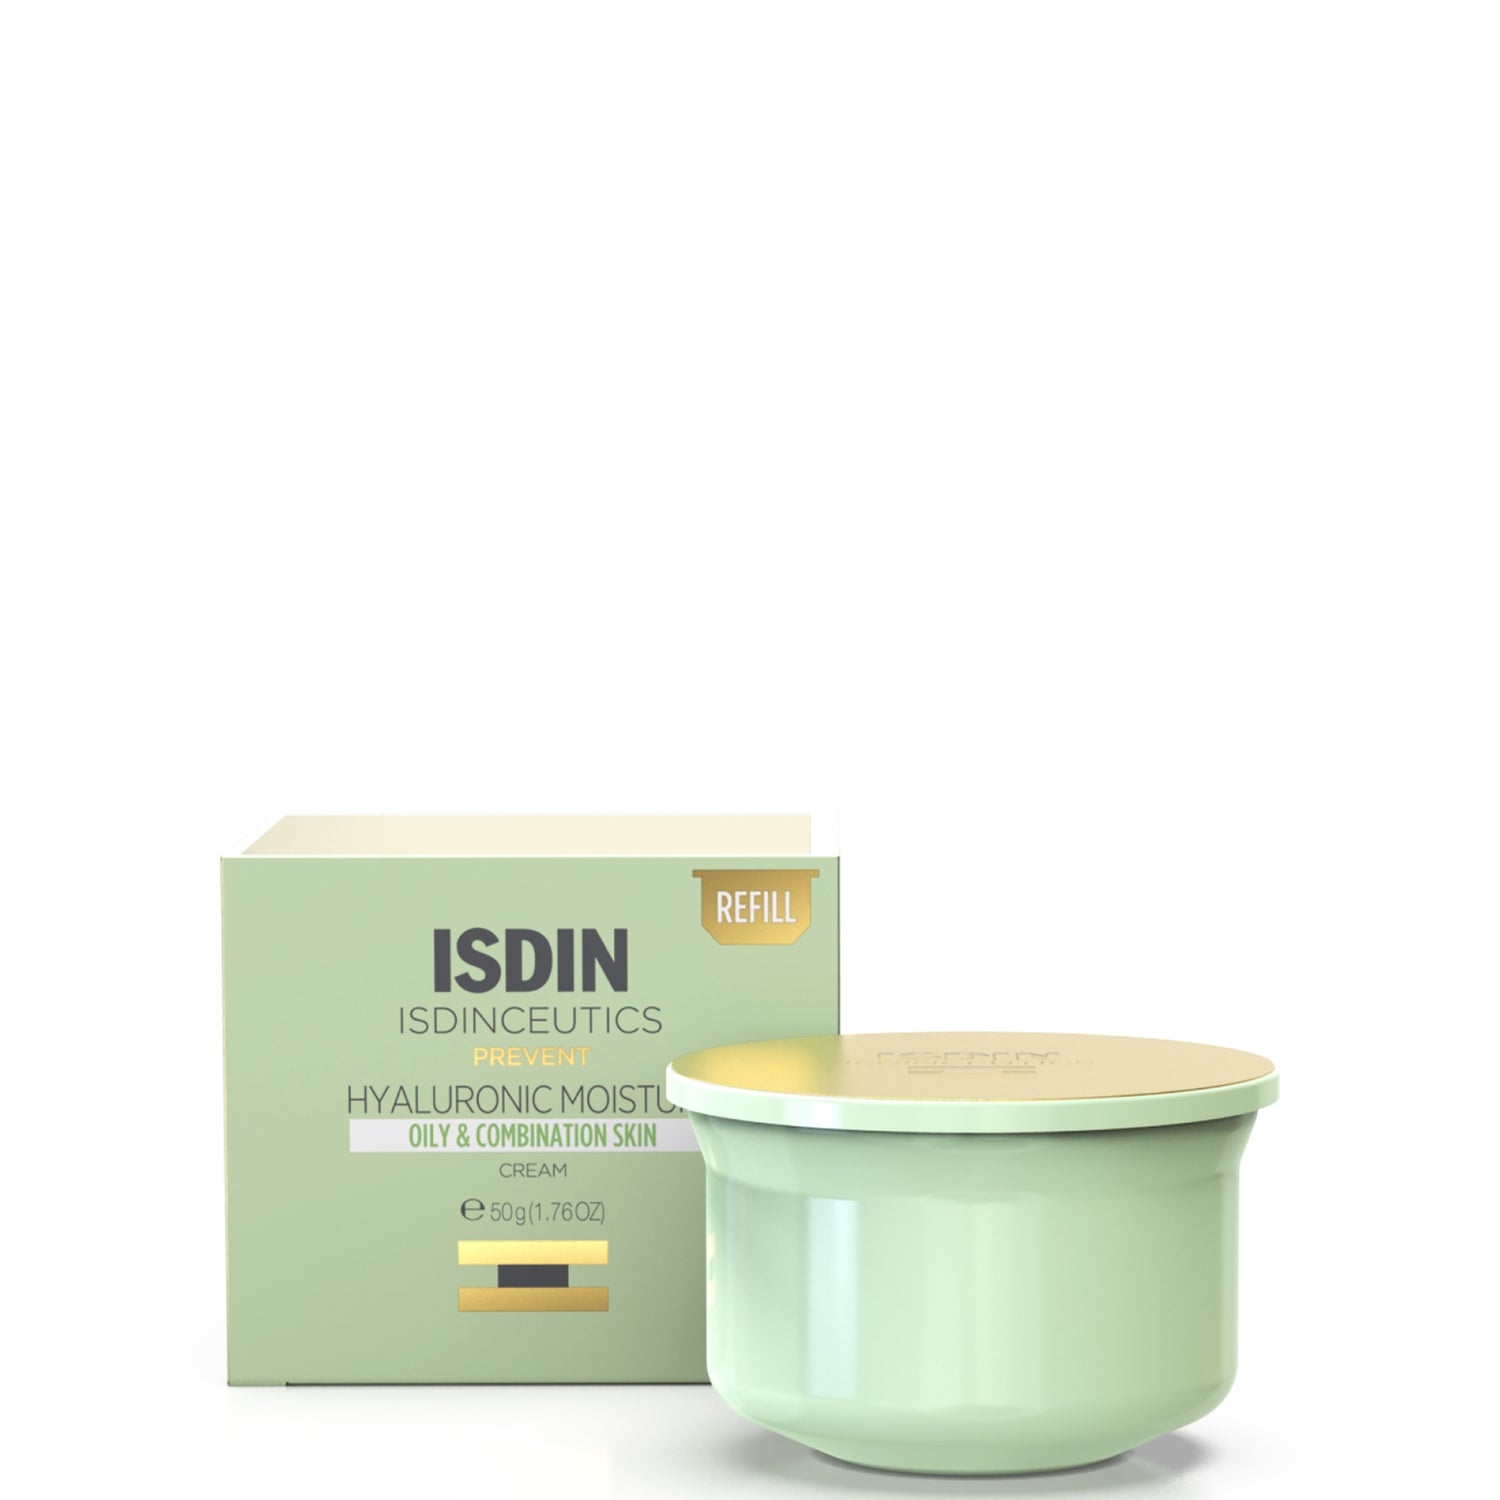 ISDIN ISDINCEUTICS Hyaluronic Moisture Hydrating Face Moisturiser for Oily Skin 50ml Refill